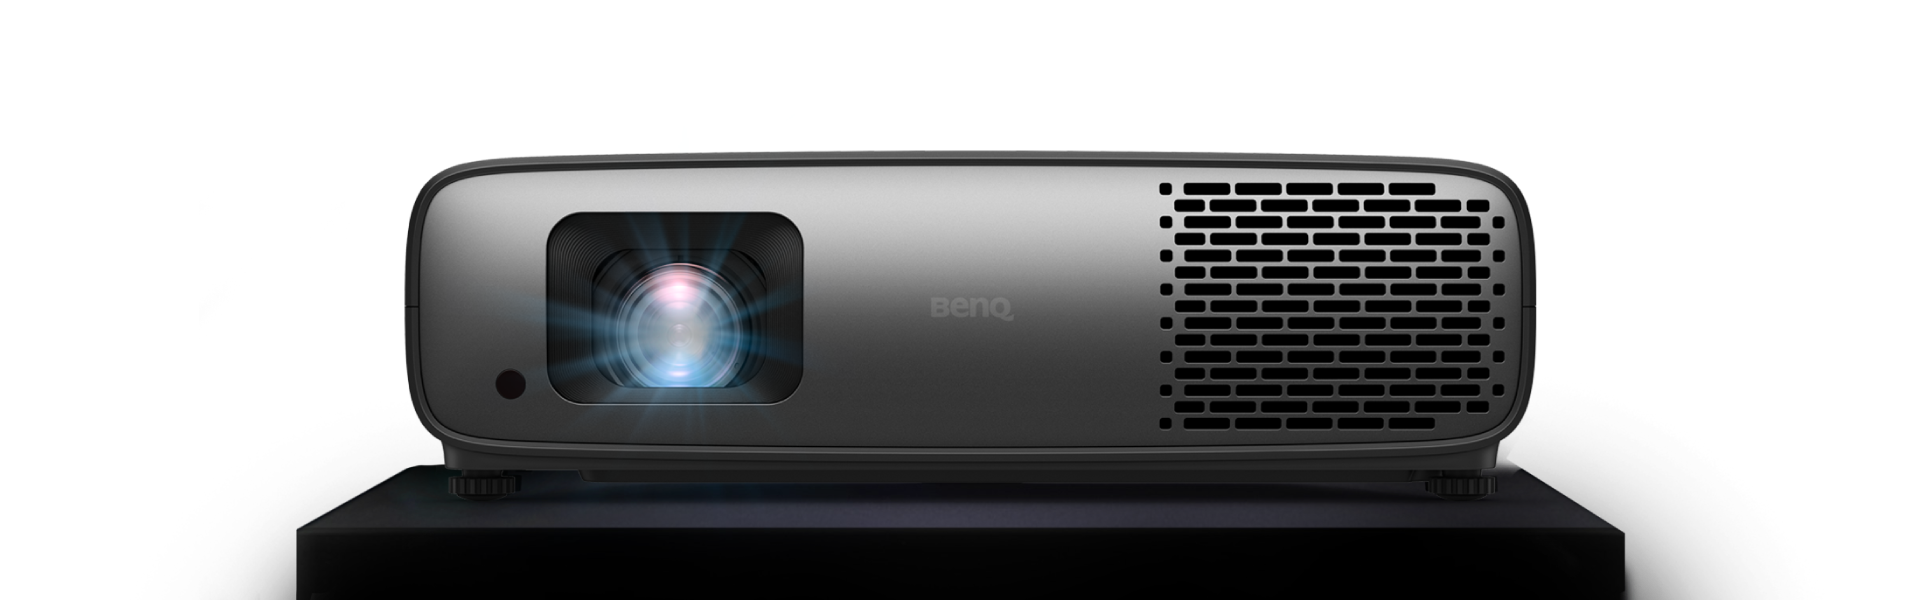 BenQ 4k Projector